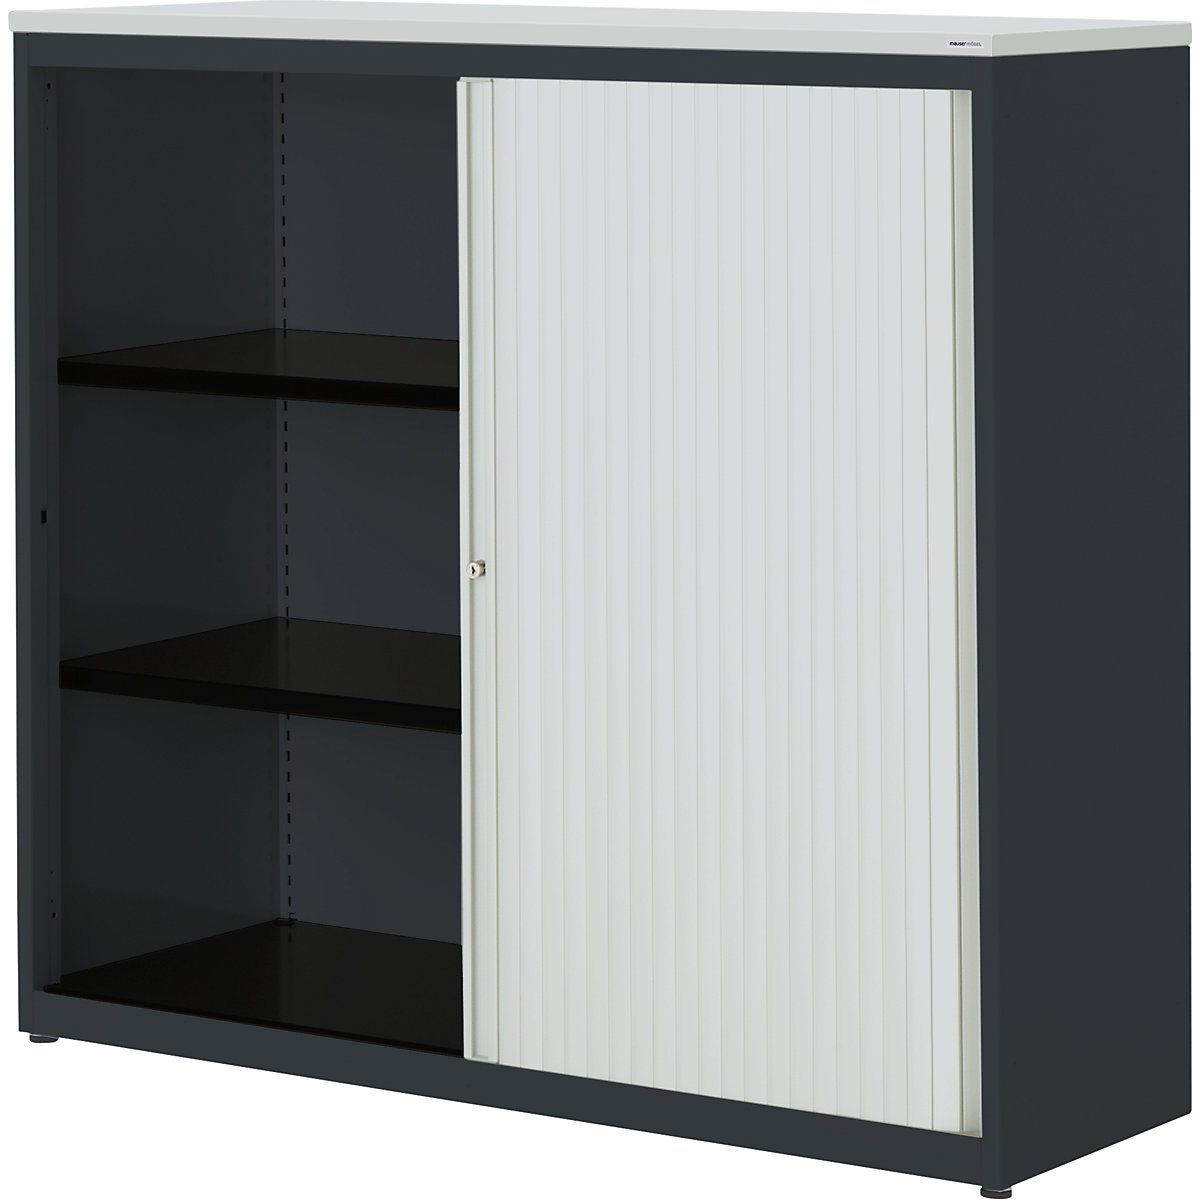 Horizontal roller shutter cupboard – mauser, HxWxD 1180 x 1200 x 432 mm, plastic panel, 2 shelves, charcoal / light grey / light grey-5